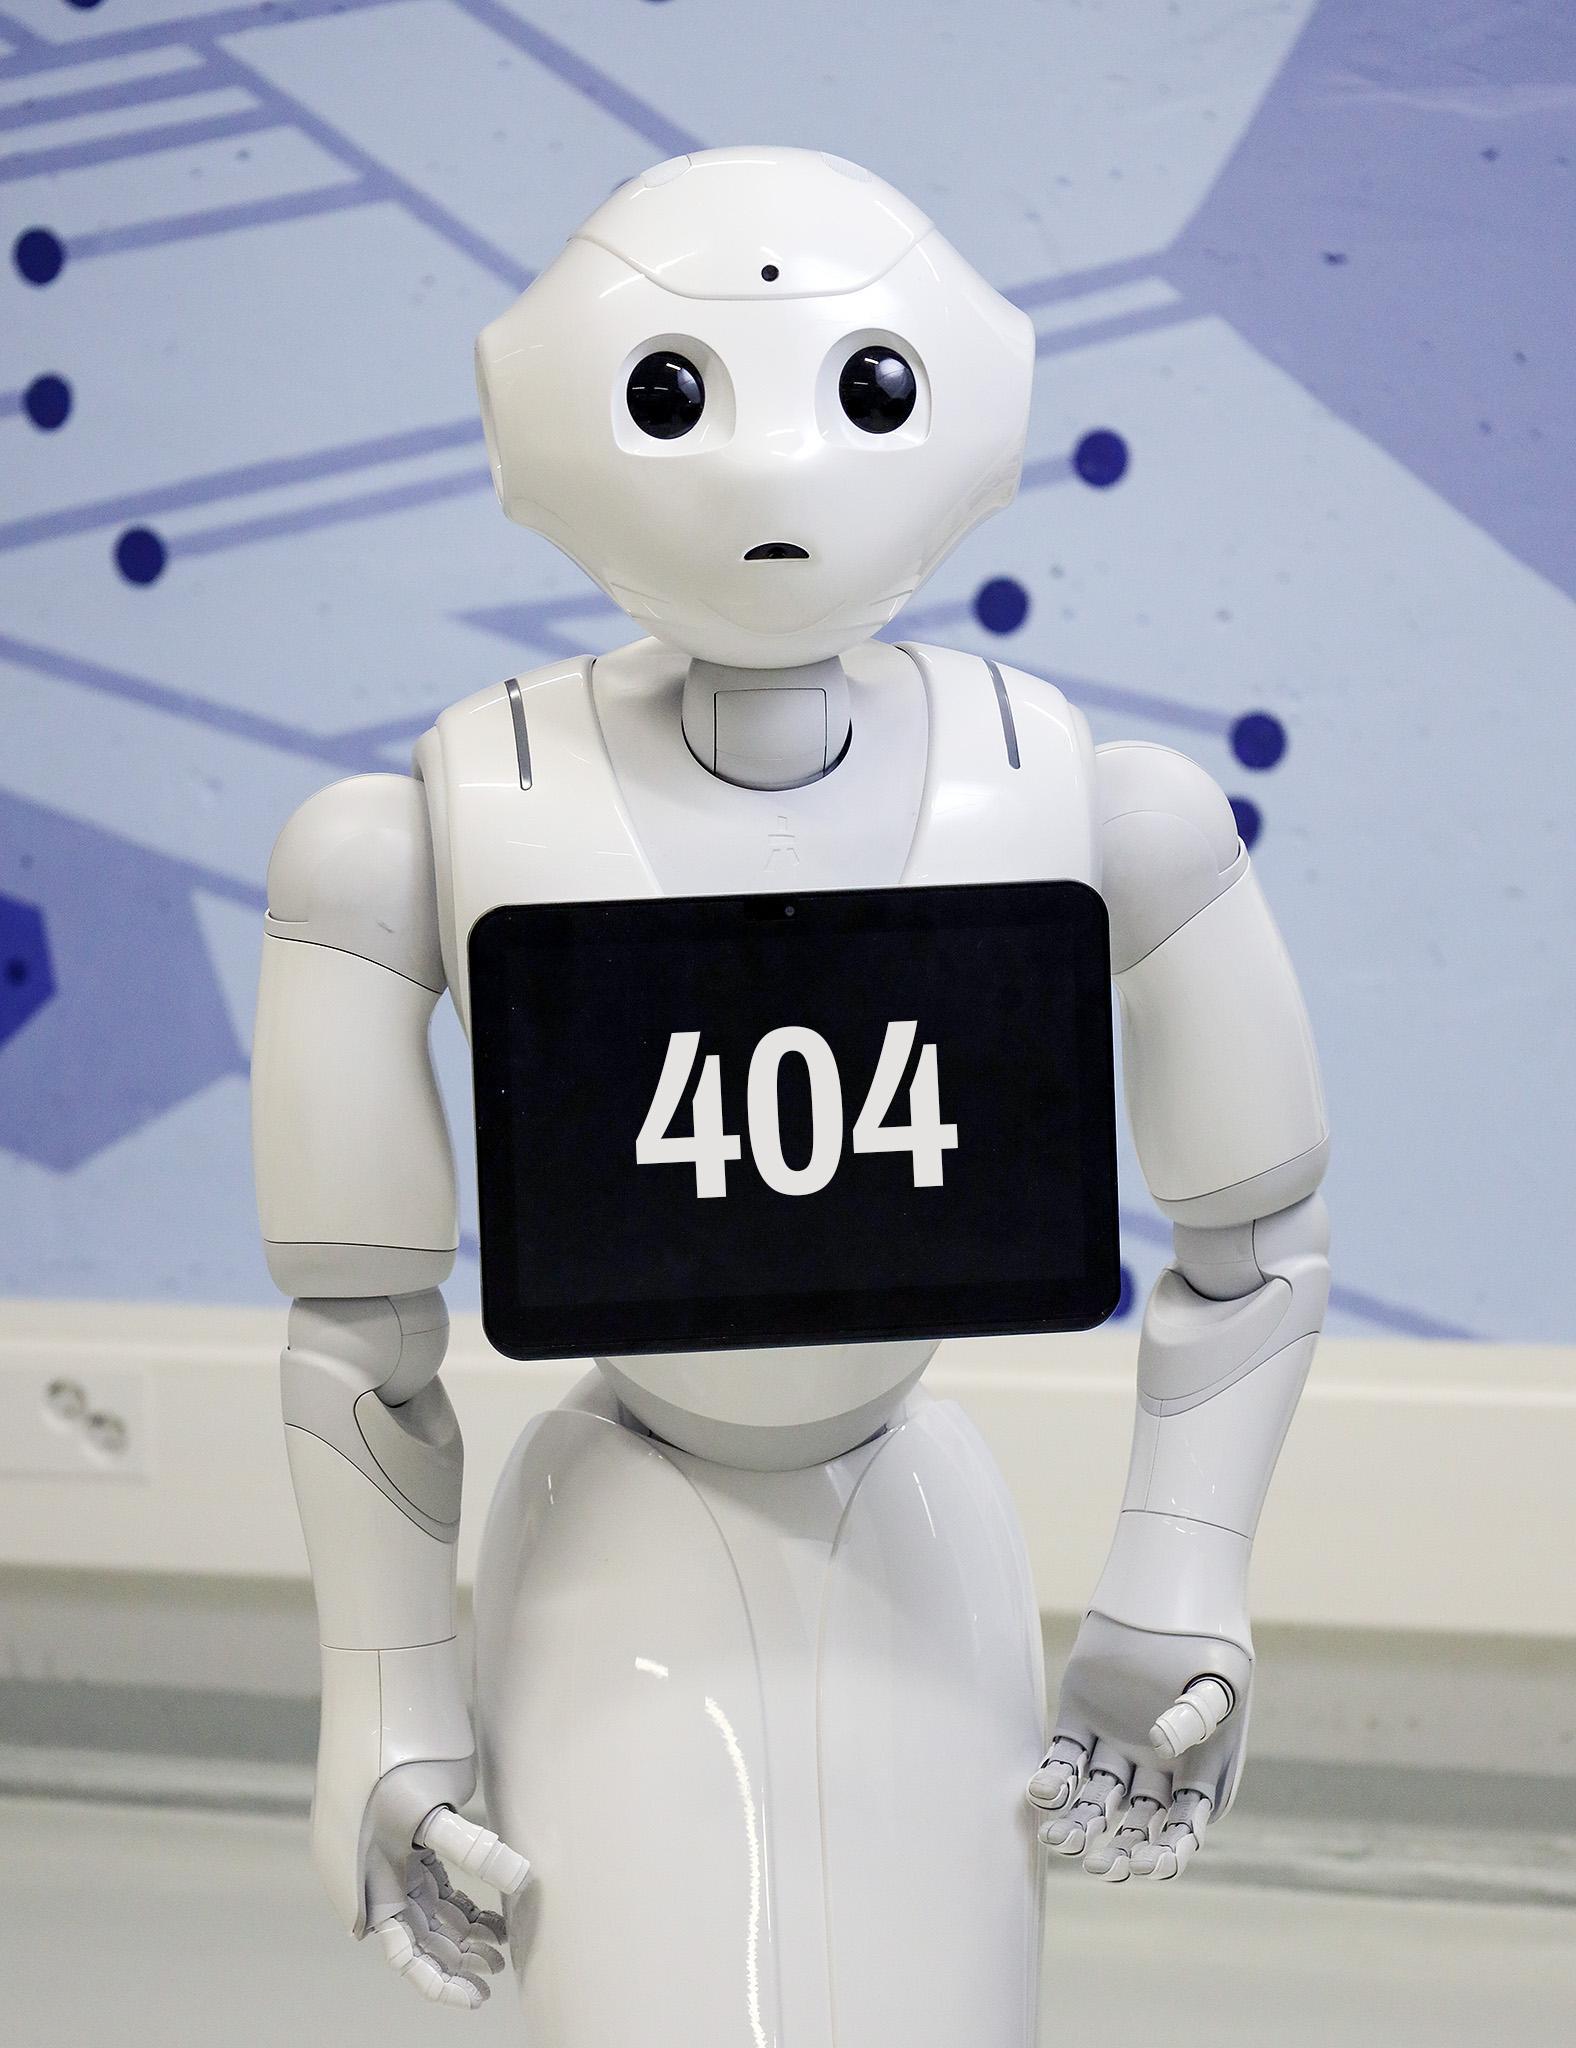 Humanoidirobotti katsoo kohti kameraa ja näyttää ruudulla 404-tekstiä